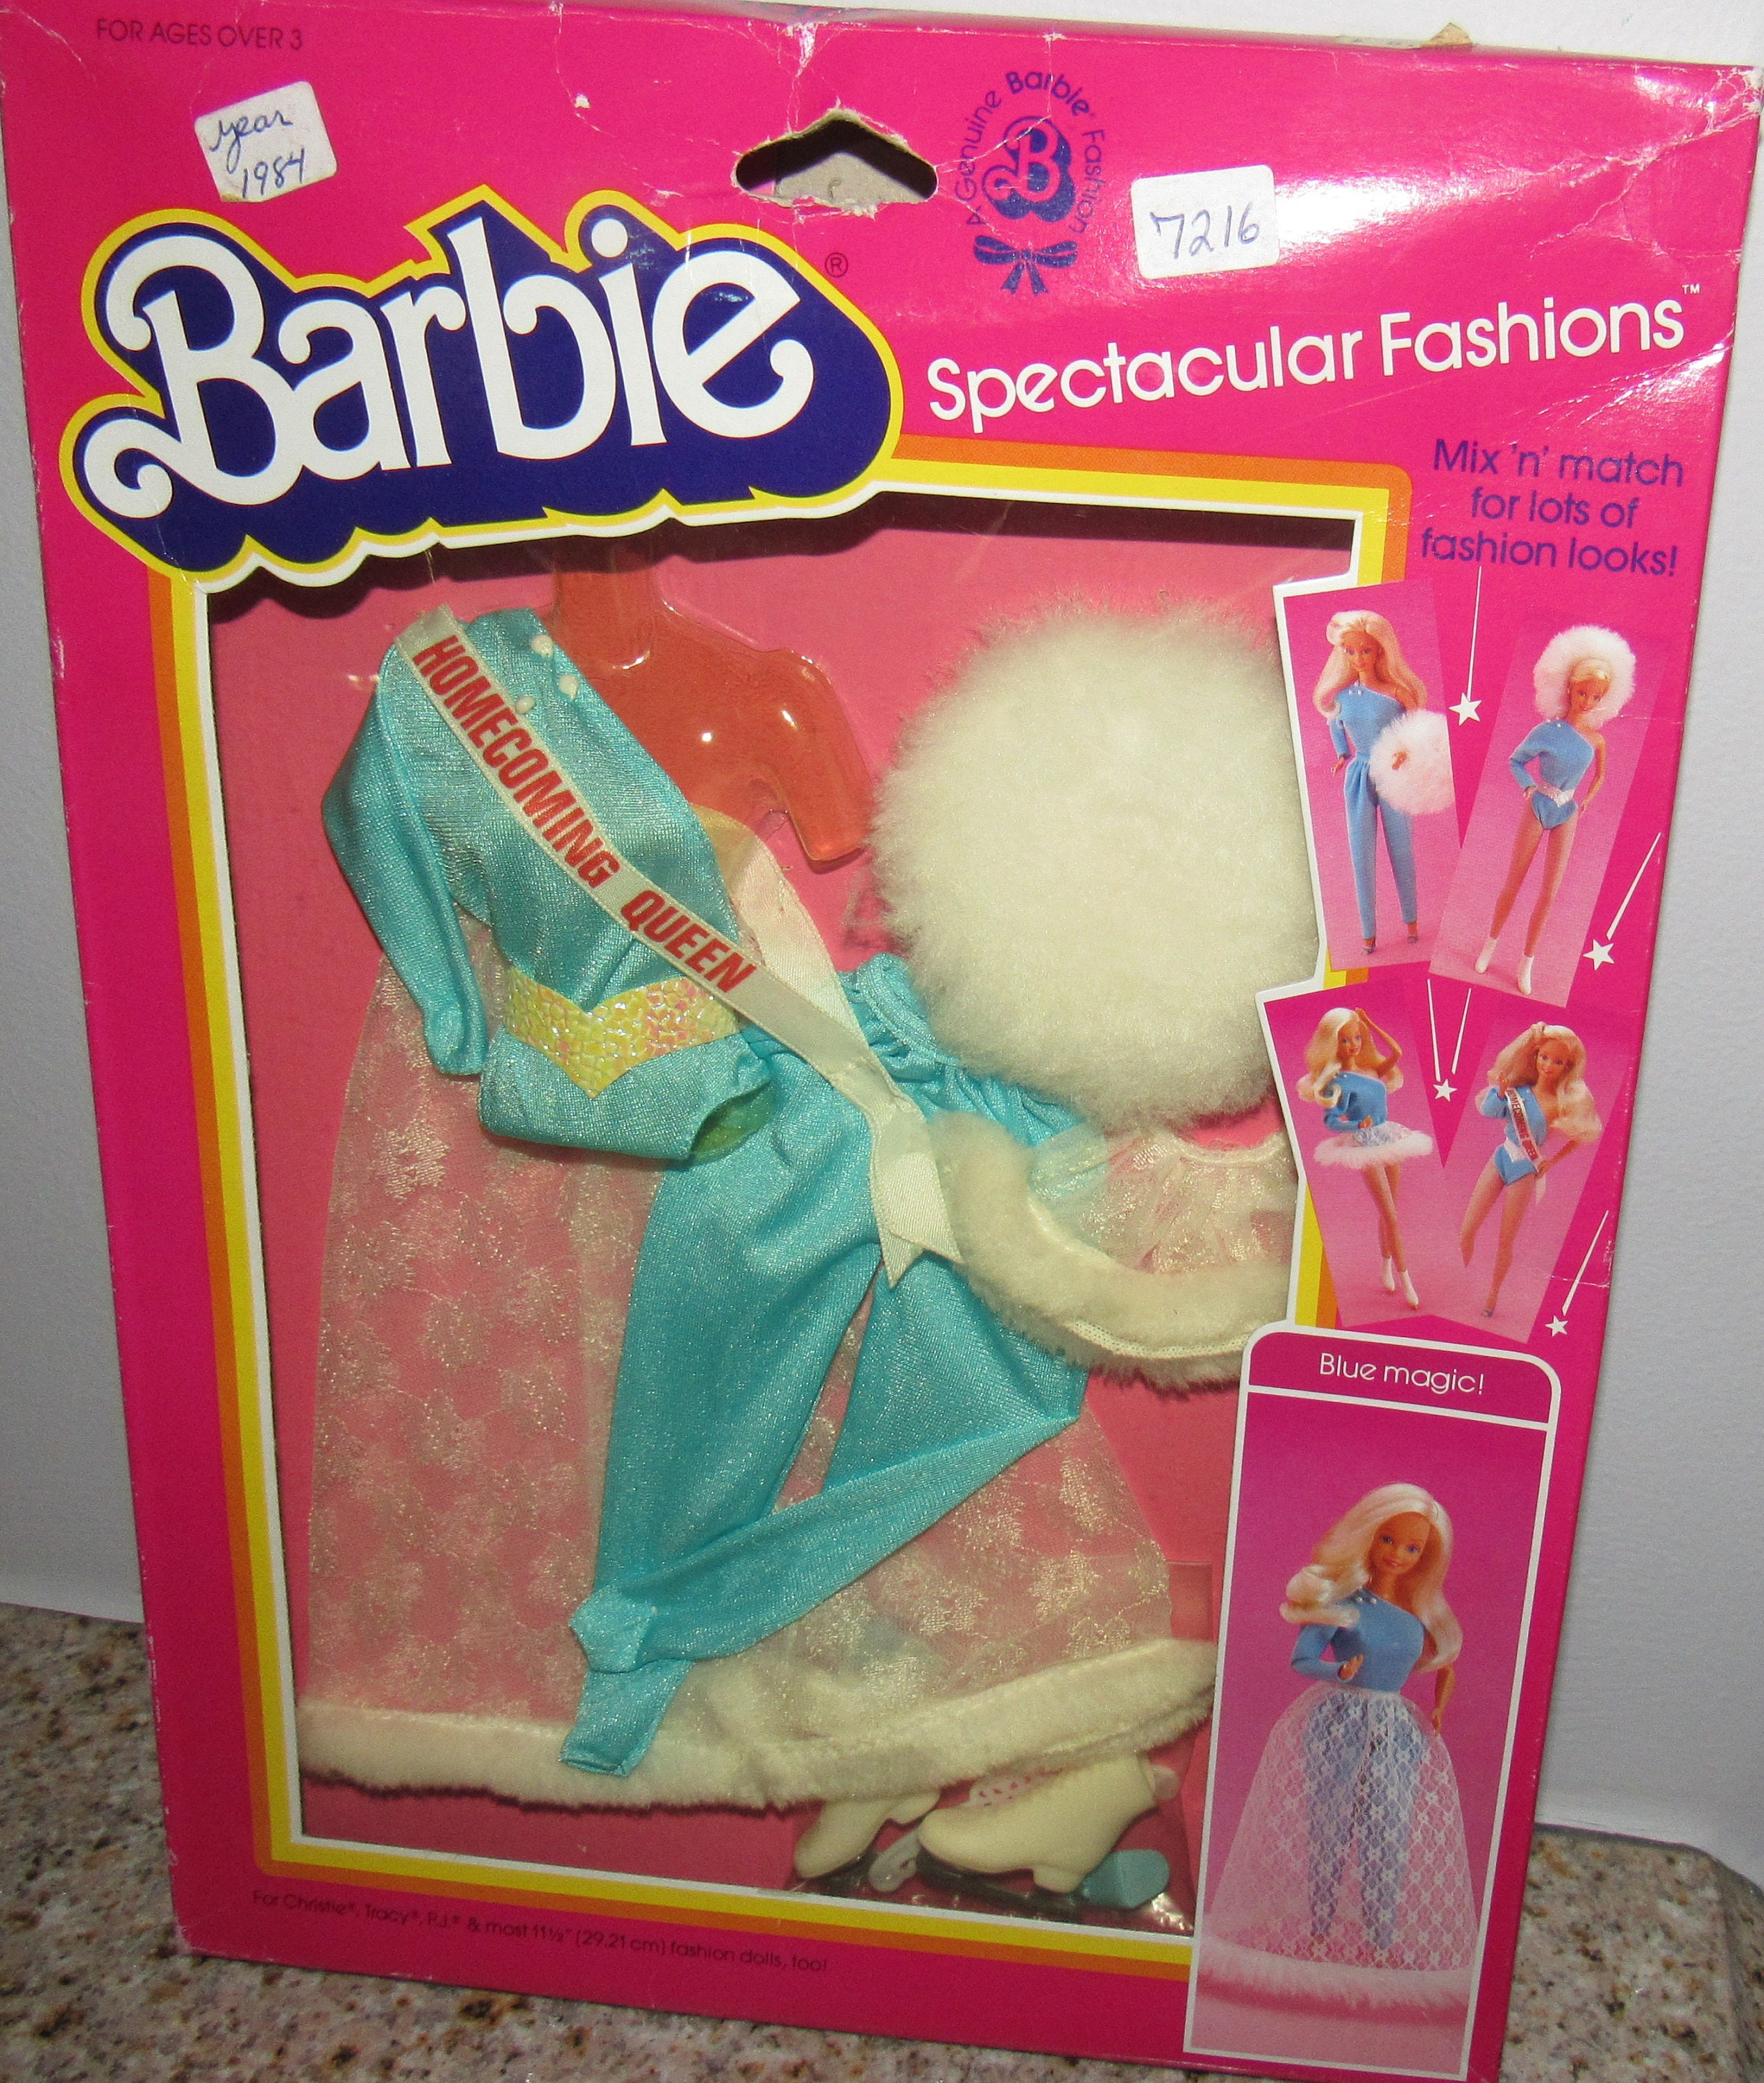 Vintage MIB & NRFB Barbie Spectacular Fashions 7216 Circa 1984 - Etsy